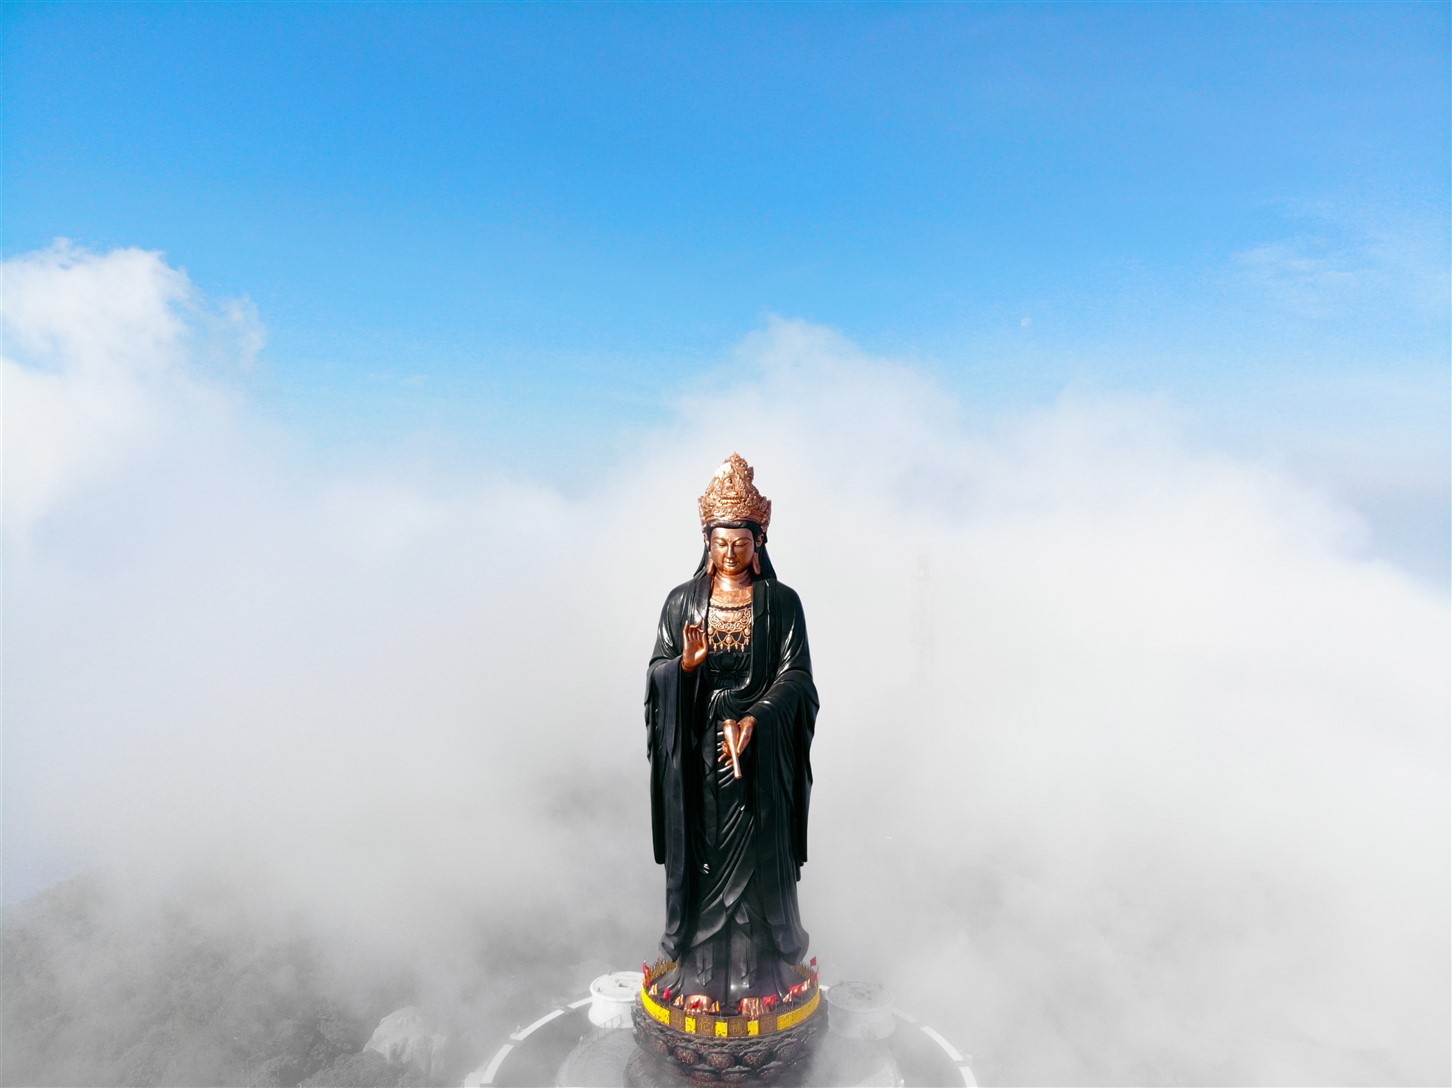 Tượng Phật Bà bằng đồng cao nhất Châu Á được đúc hoàn toàn bằng đồng, chi tiết tinh tế và sắc nét, mang đến một vẻ đẹp cổ kính và trang nghiêm. Hãy đắm chìm trong vẻ đẹp tuyệt đẹp của tượng Phật Bà này và tìm thấy niềm tin và sự bình an trong mình.